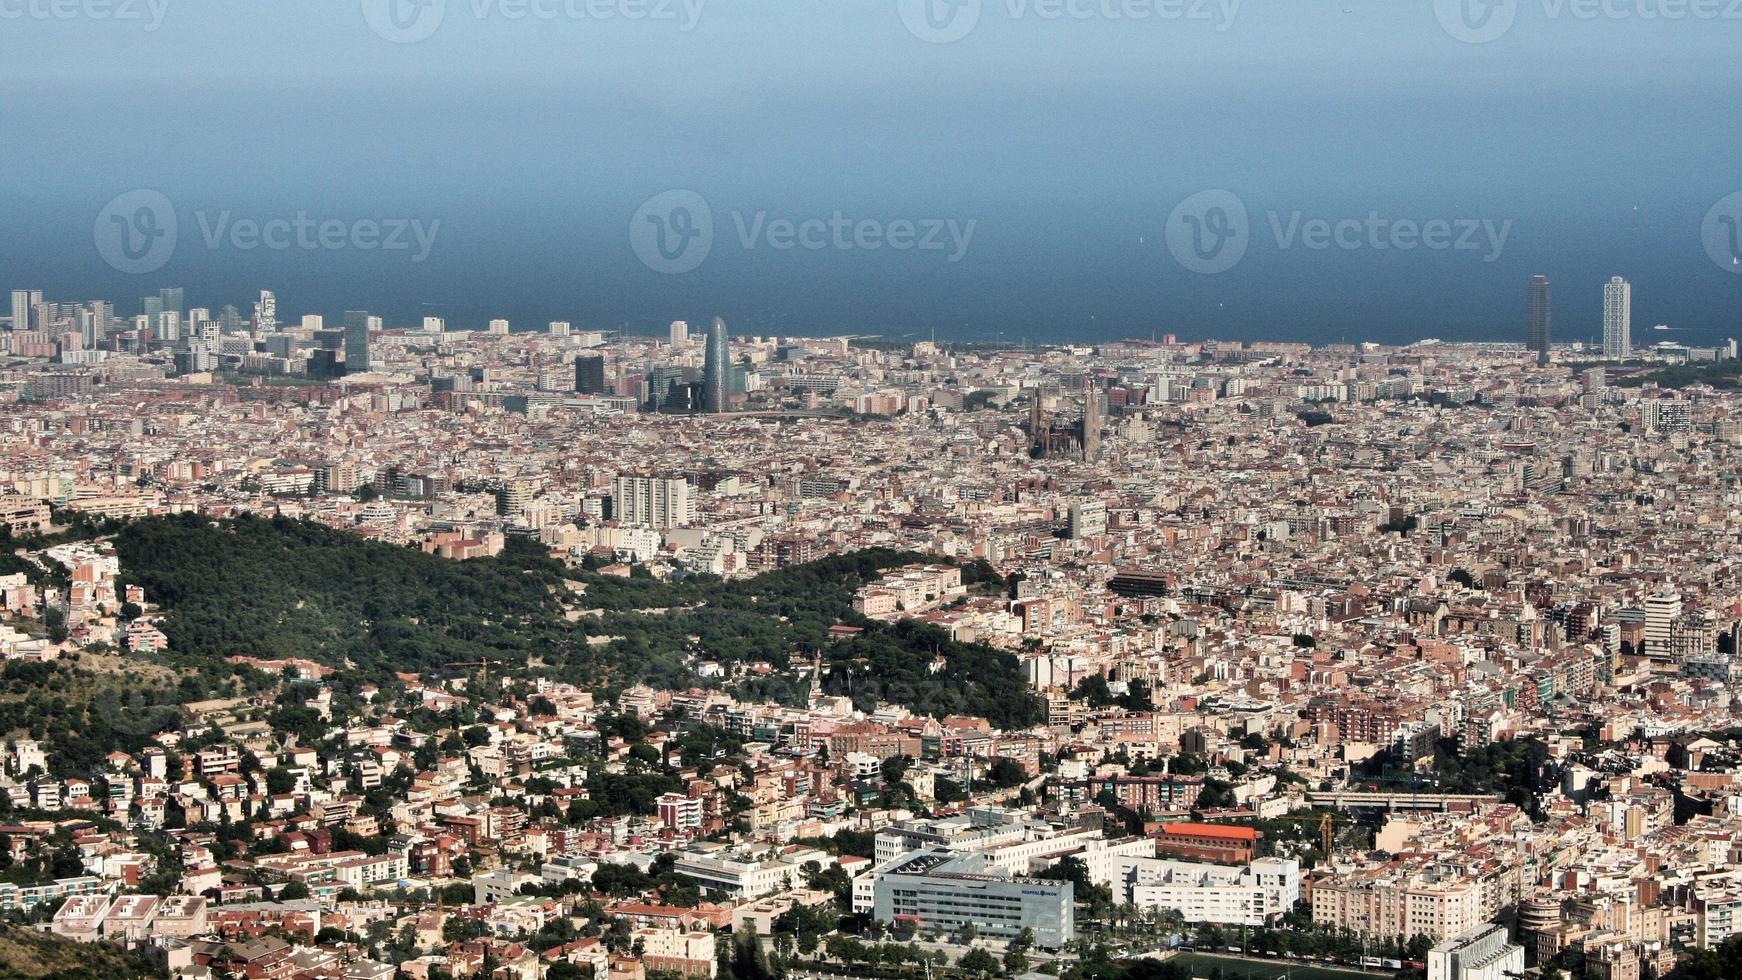 una vista aerea de barcelona foto